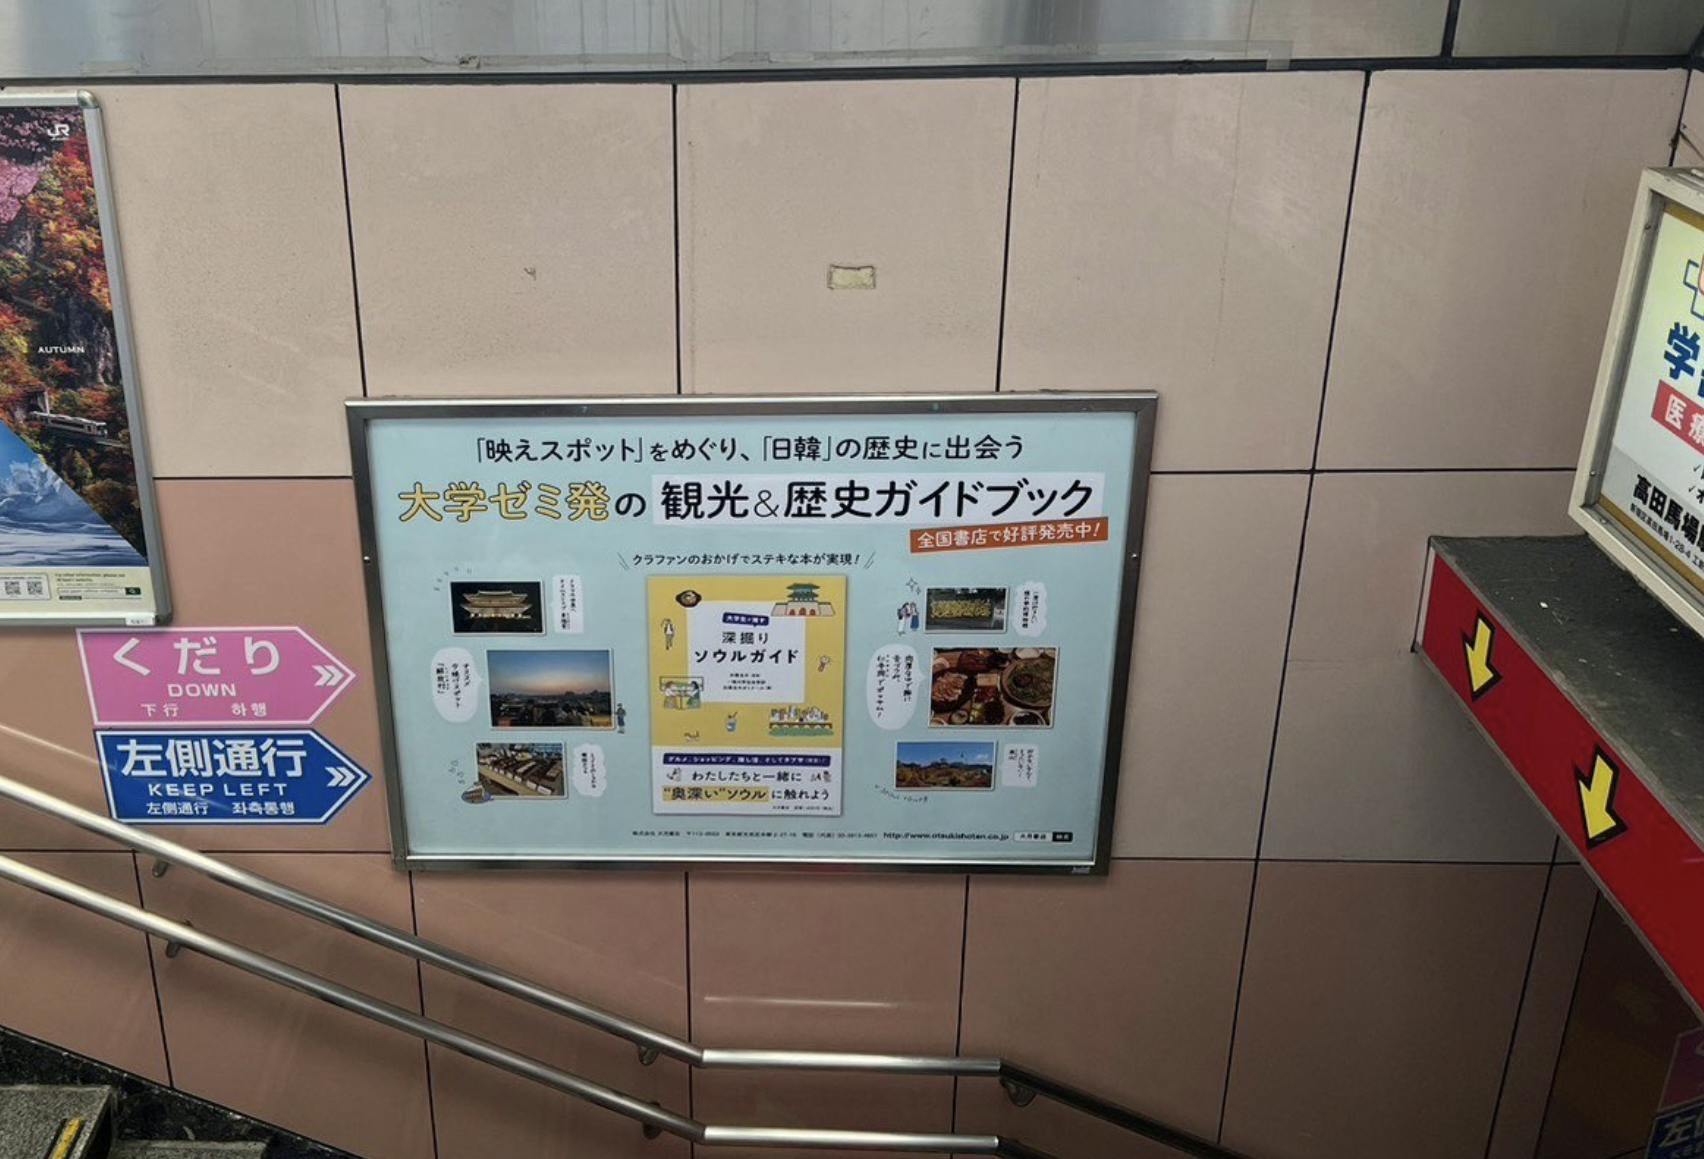 新大久保駅構内にある『大学生が推す 深掘りソウルガイド』のポスター